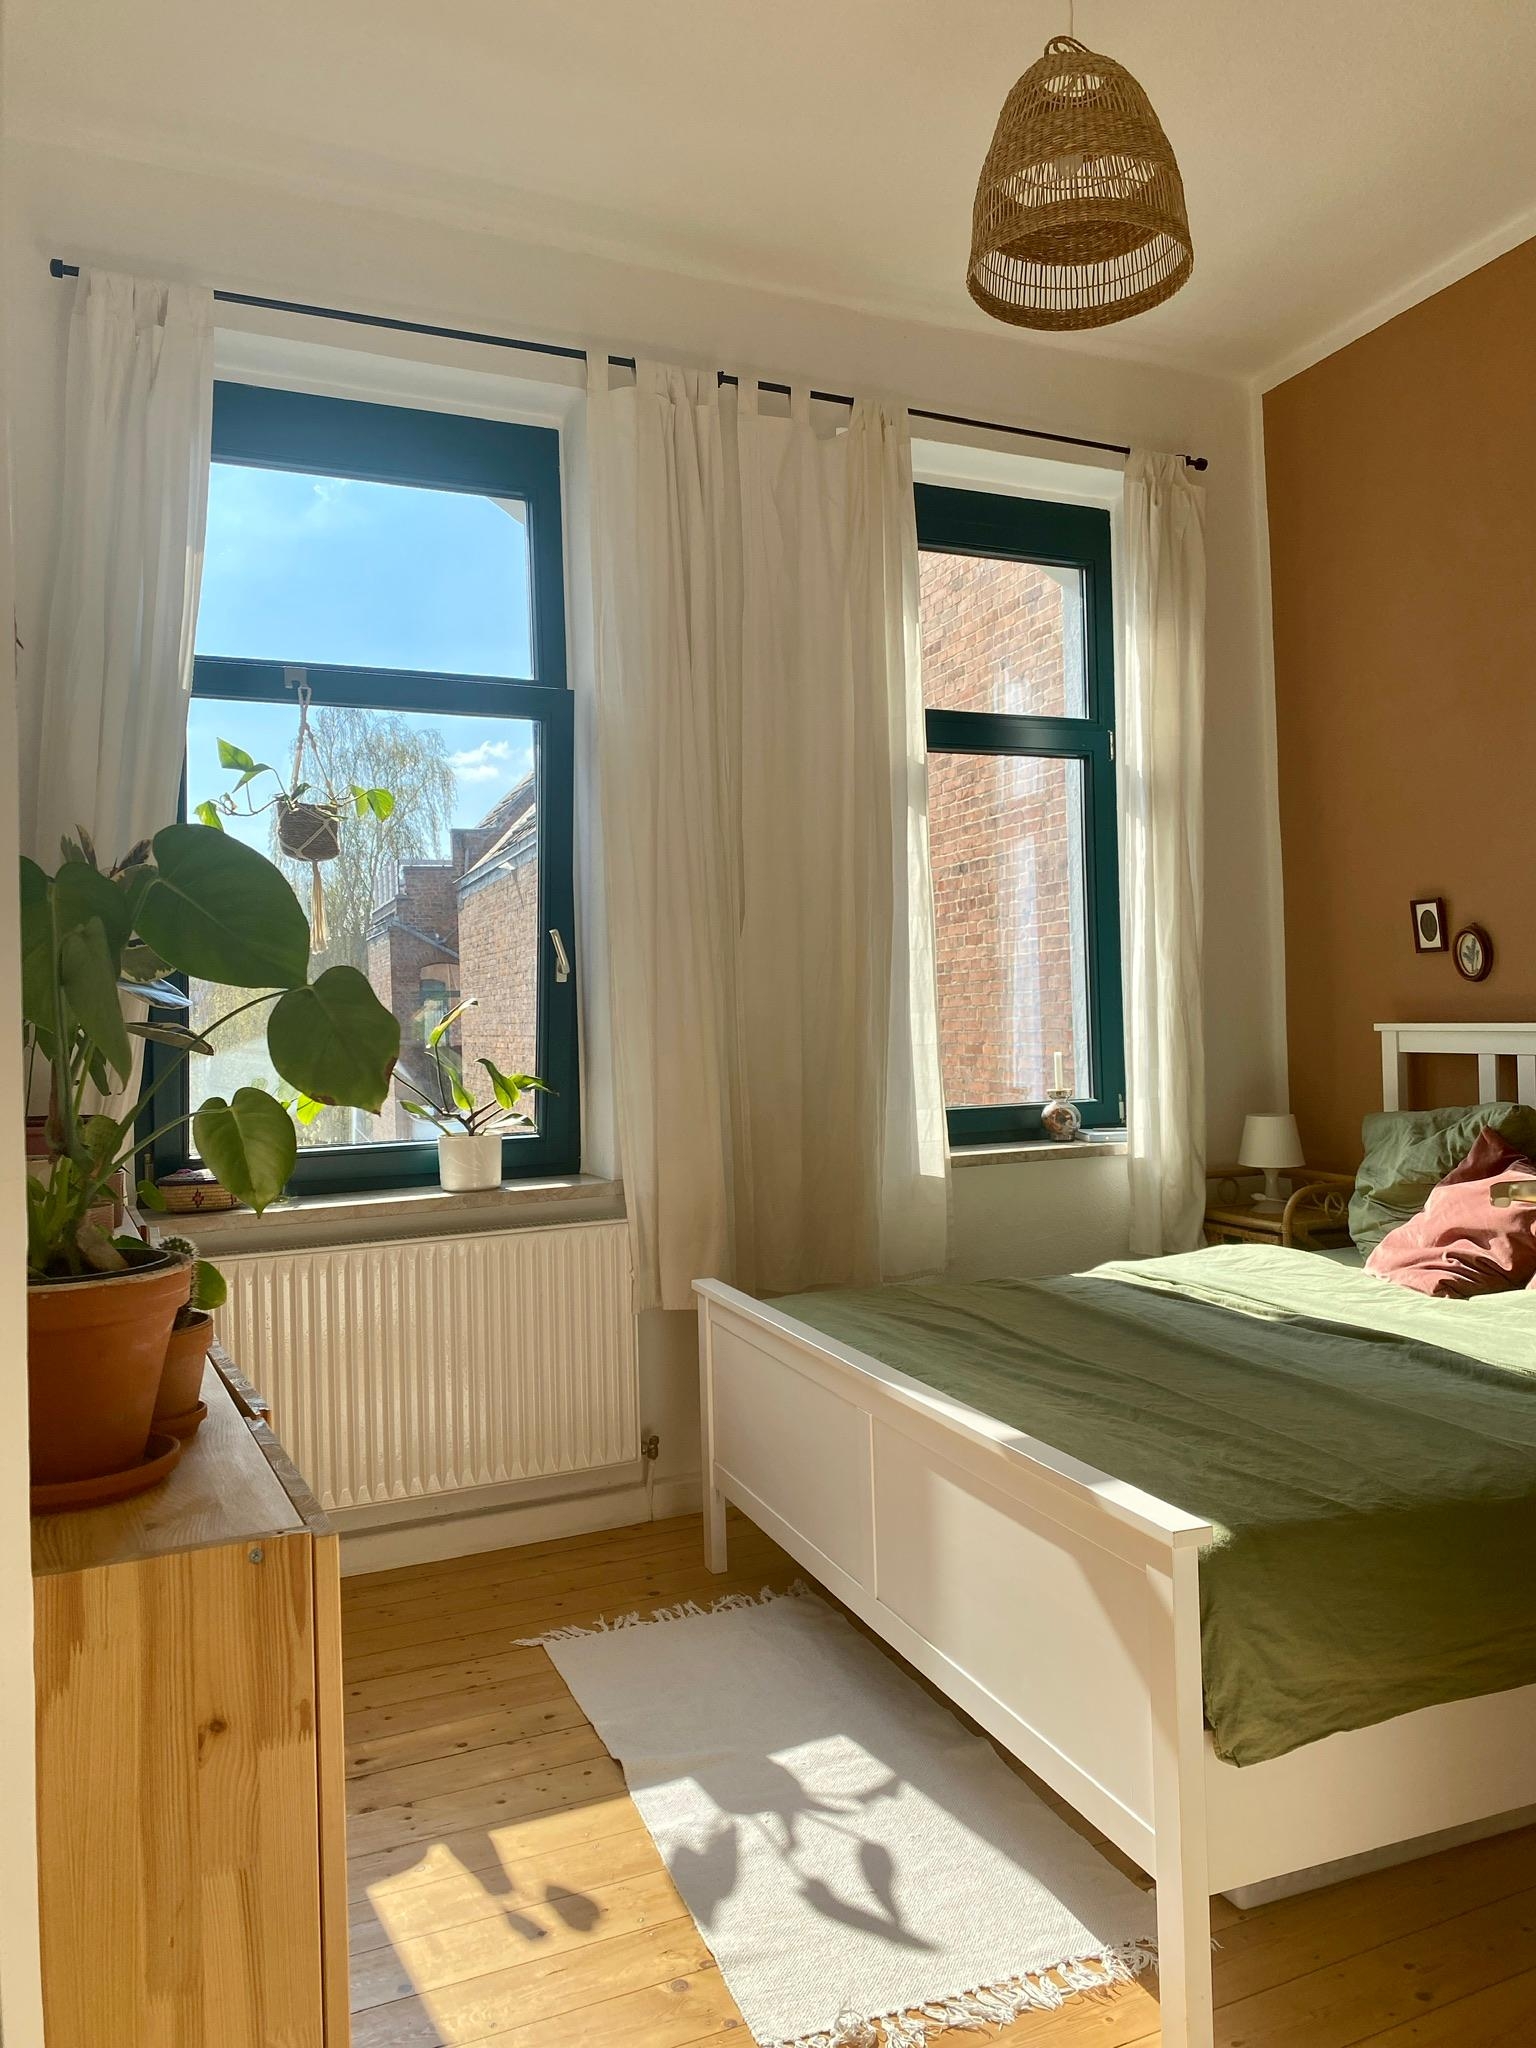 Hello sun 🌞
#schlafzimmer #schlafzimmerideen #altbau #boho #rattan #plant #grün #teppich #bedroom